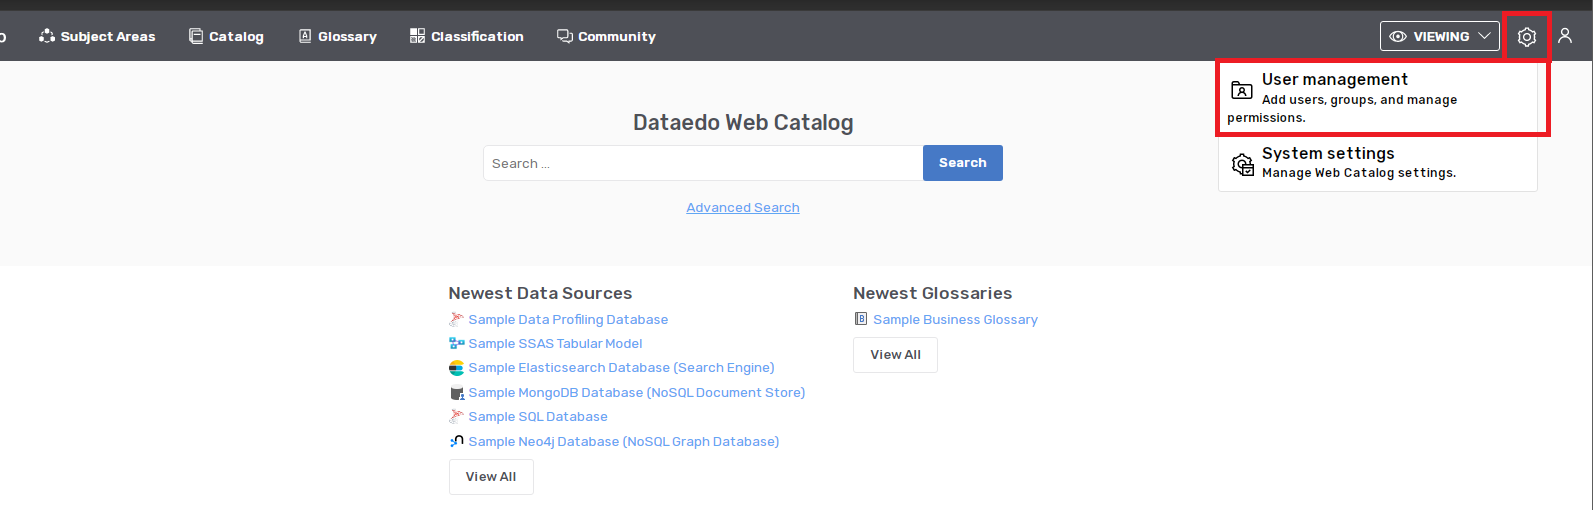 Dataedo Web- New Users settings